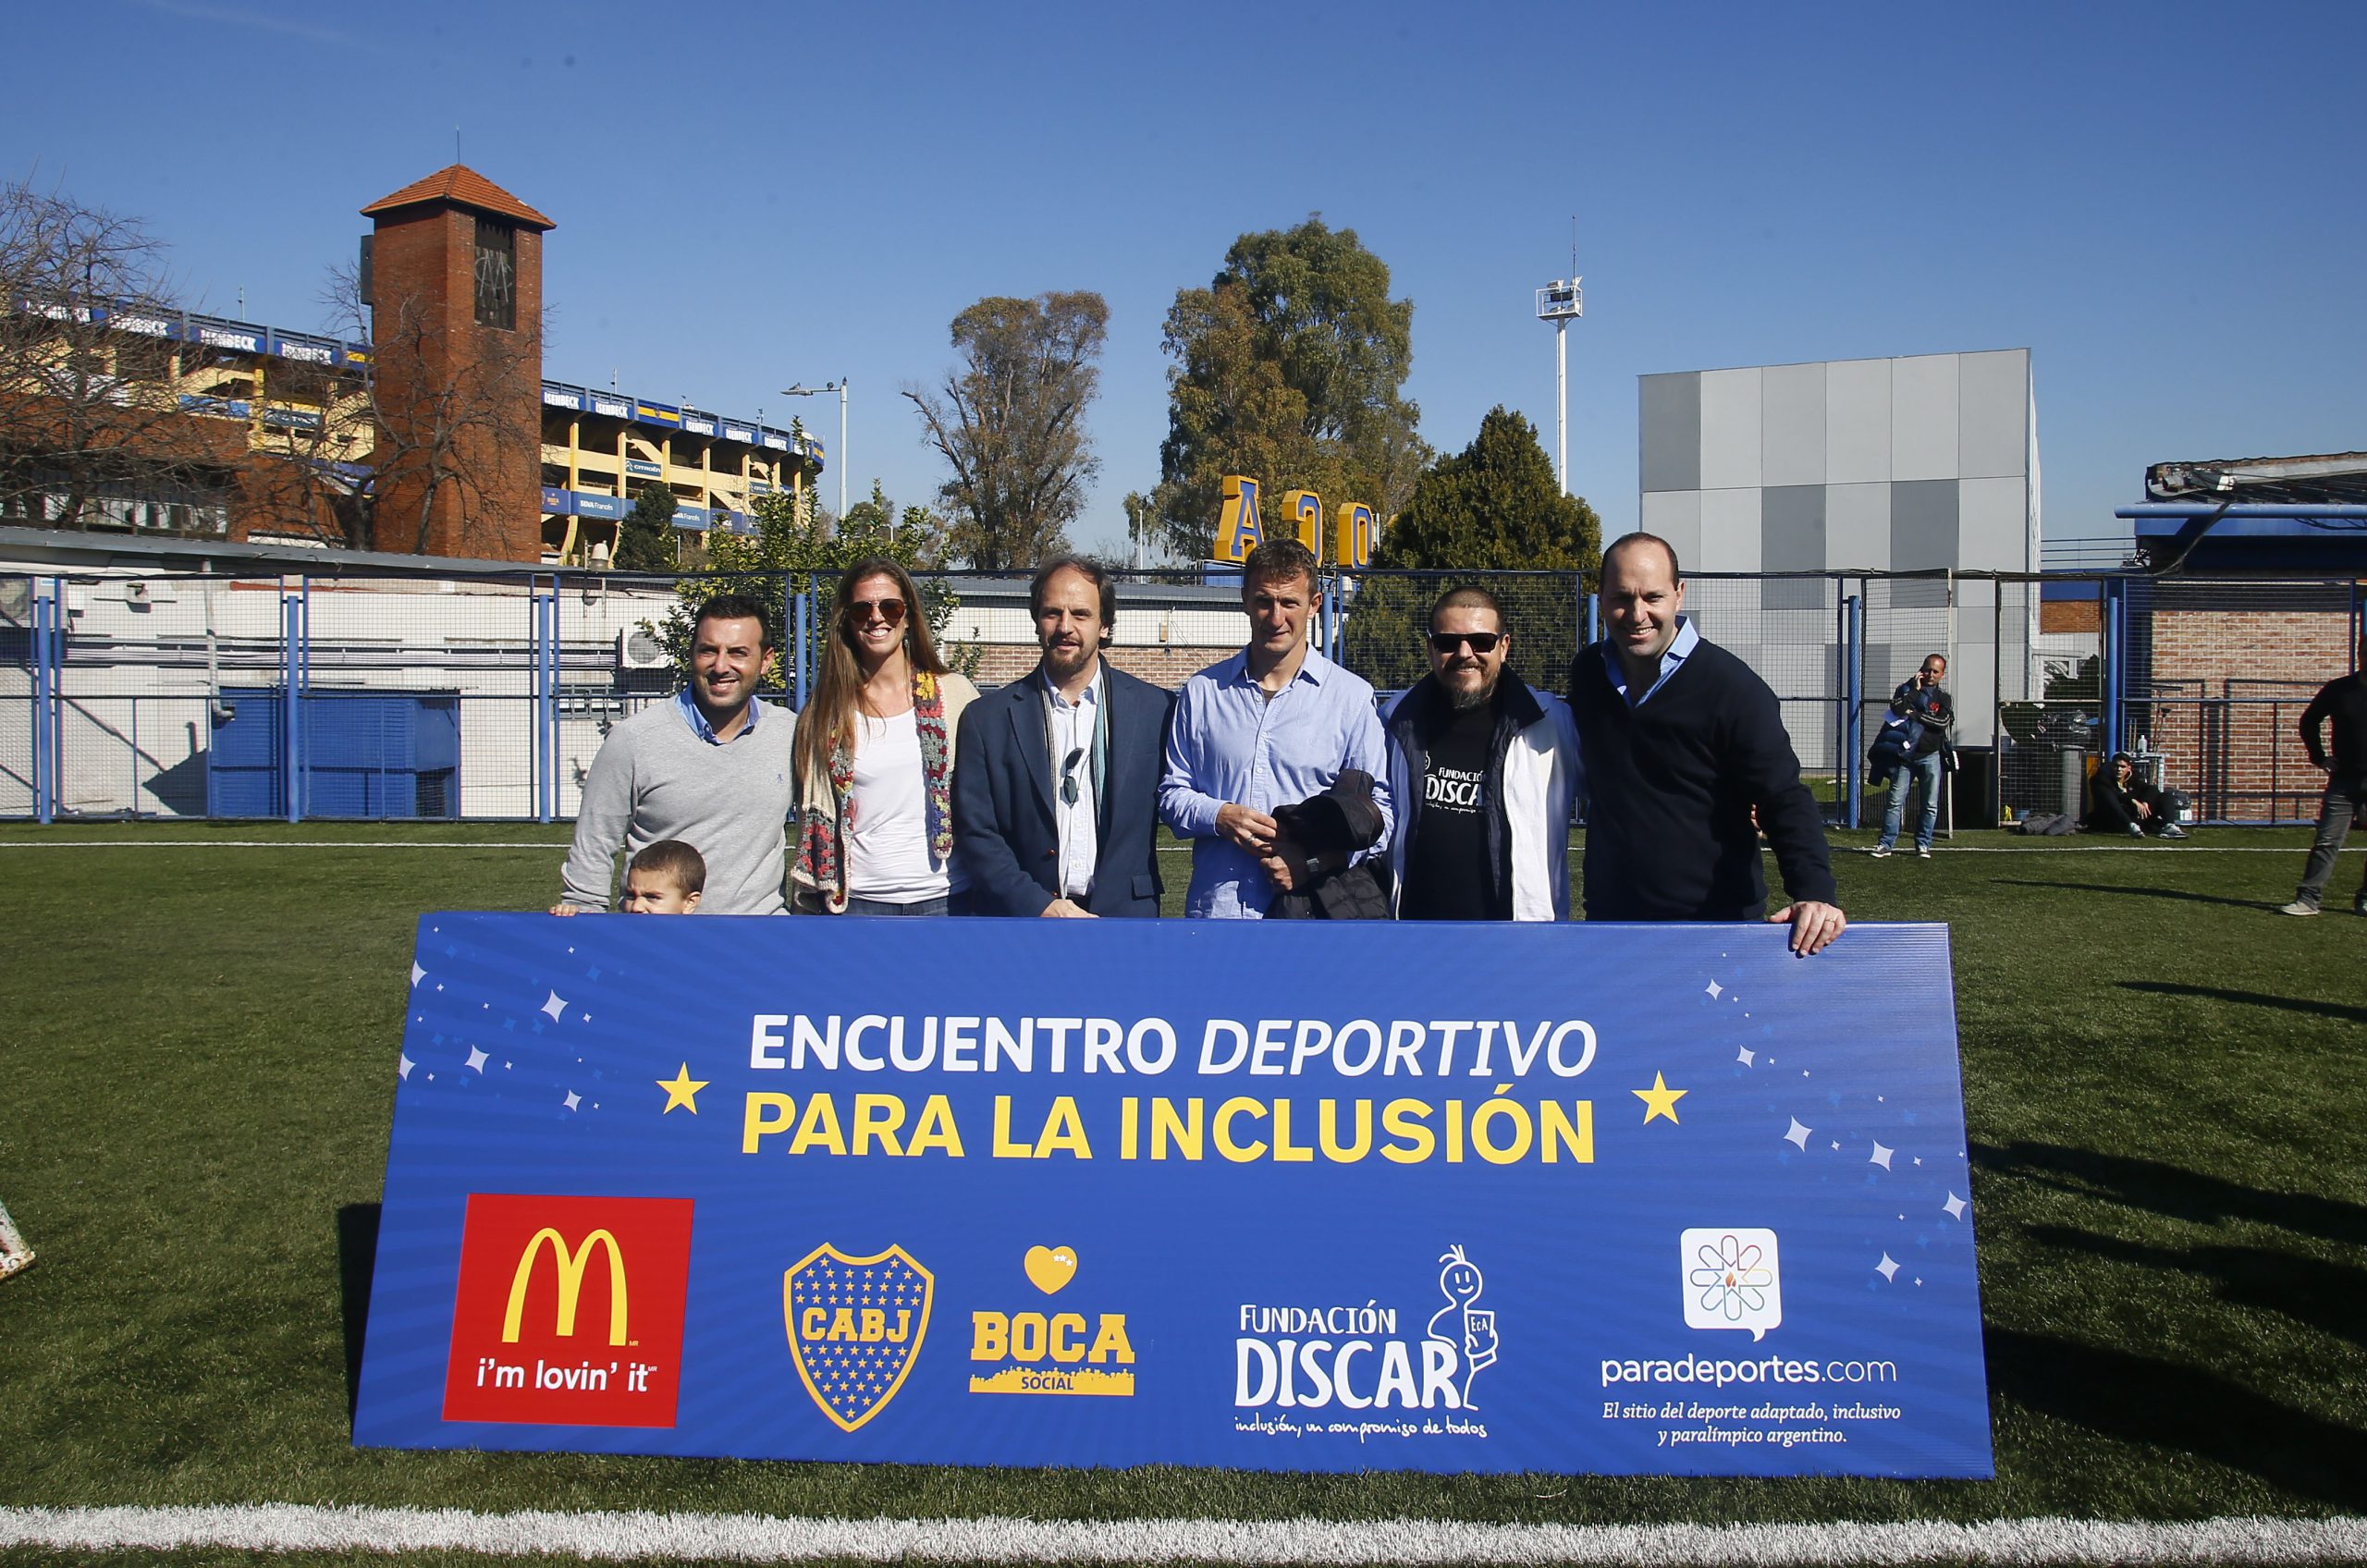 Nota: Con la participación de Paradeportes.com, se realizó en Boca un “Encuentro deportivo para la inclusión”